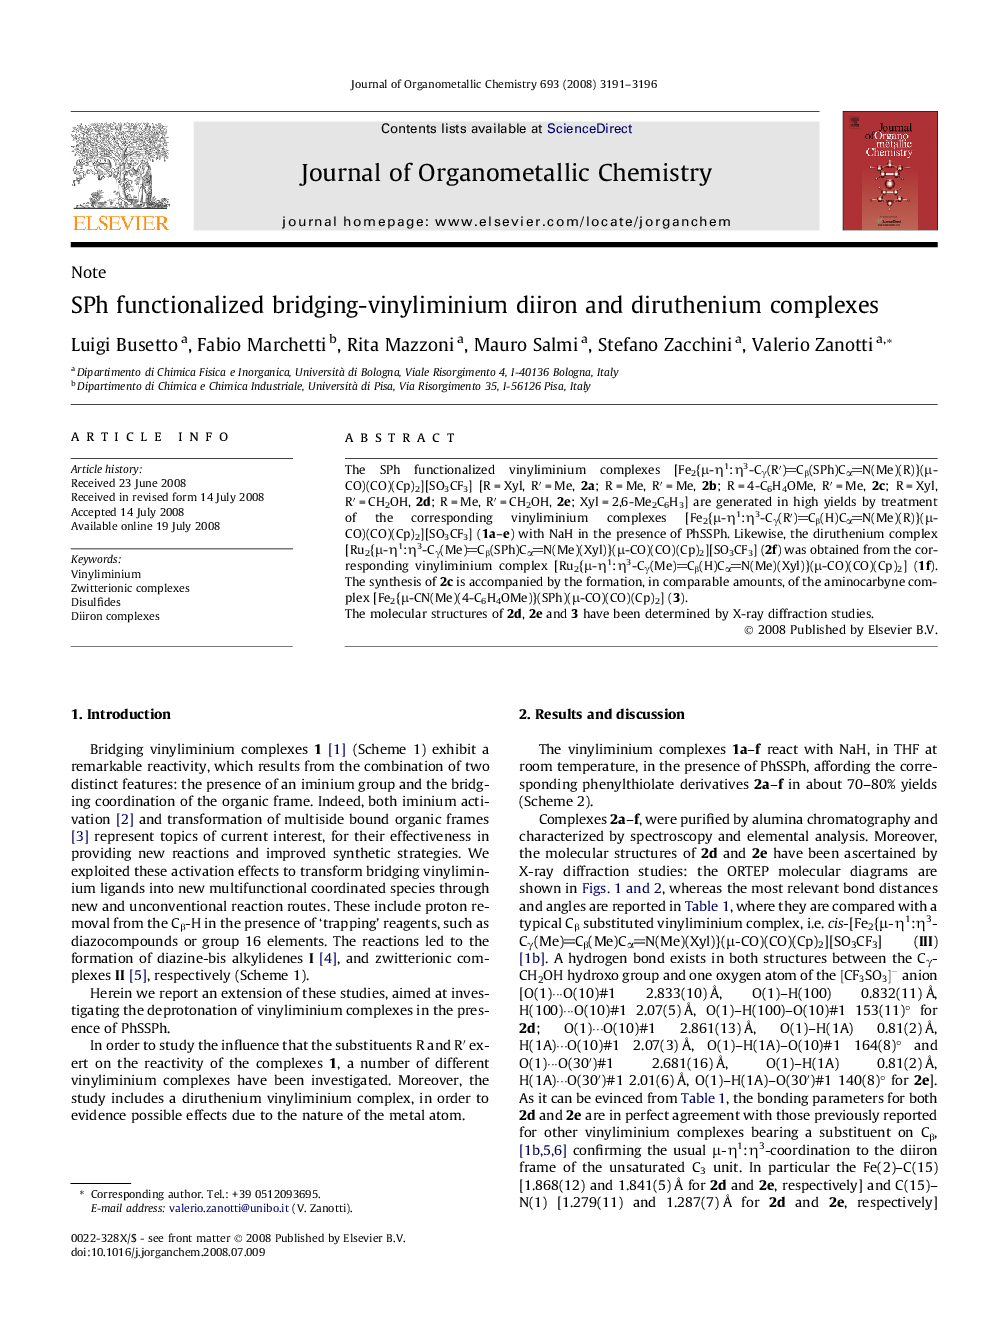 SPh functionalized bridging-vinyliminium diiron and diruthenium complexes